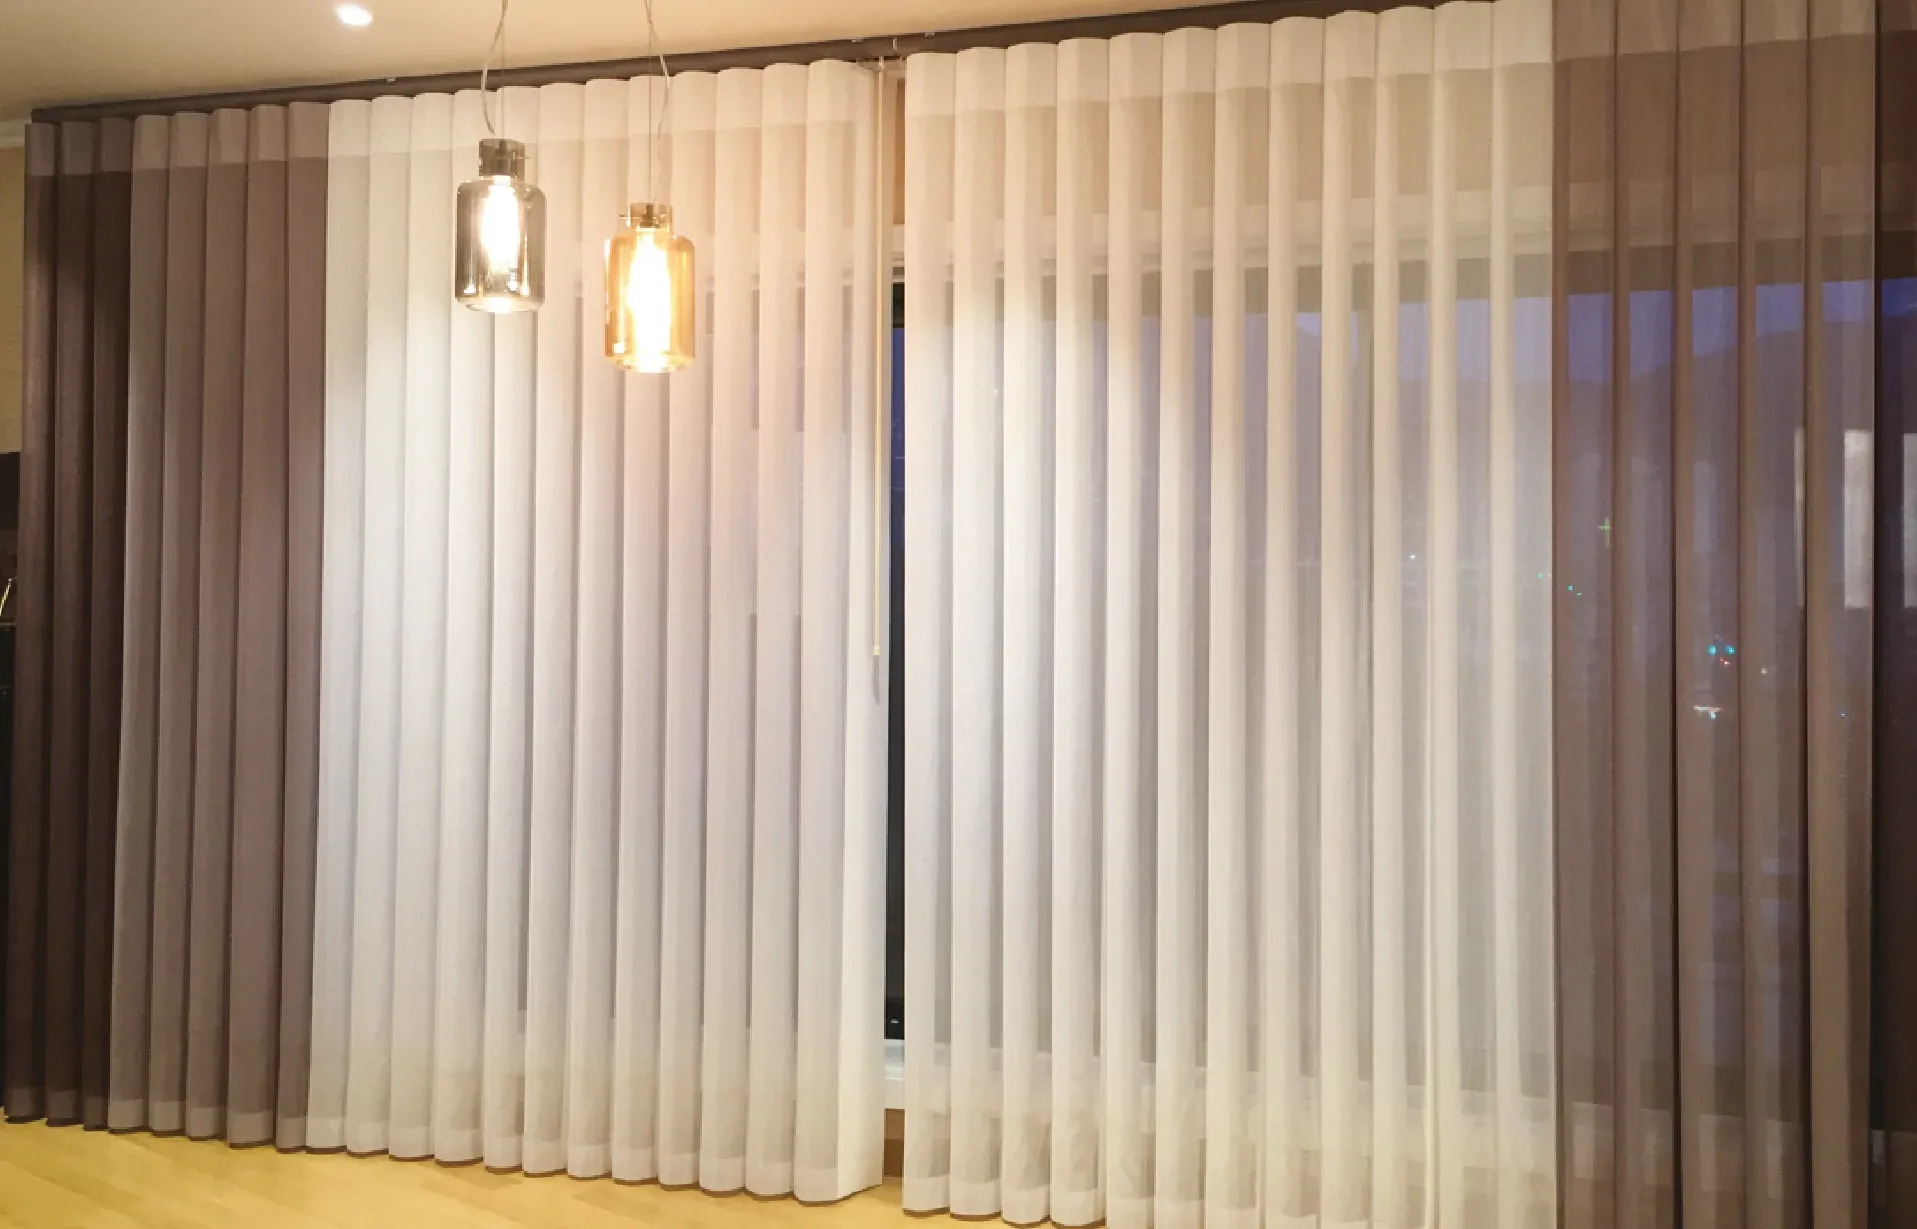 La combinación entre persiana vertical y cortina. Esta bella e innovadora persiana permite el paso del aire entre sus tejidos individuales.